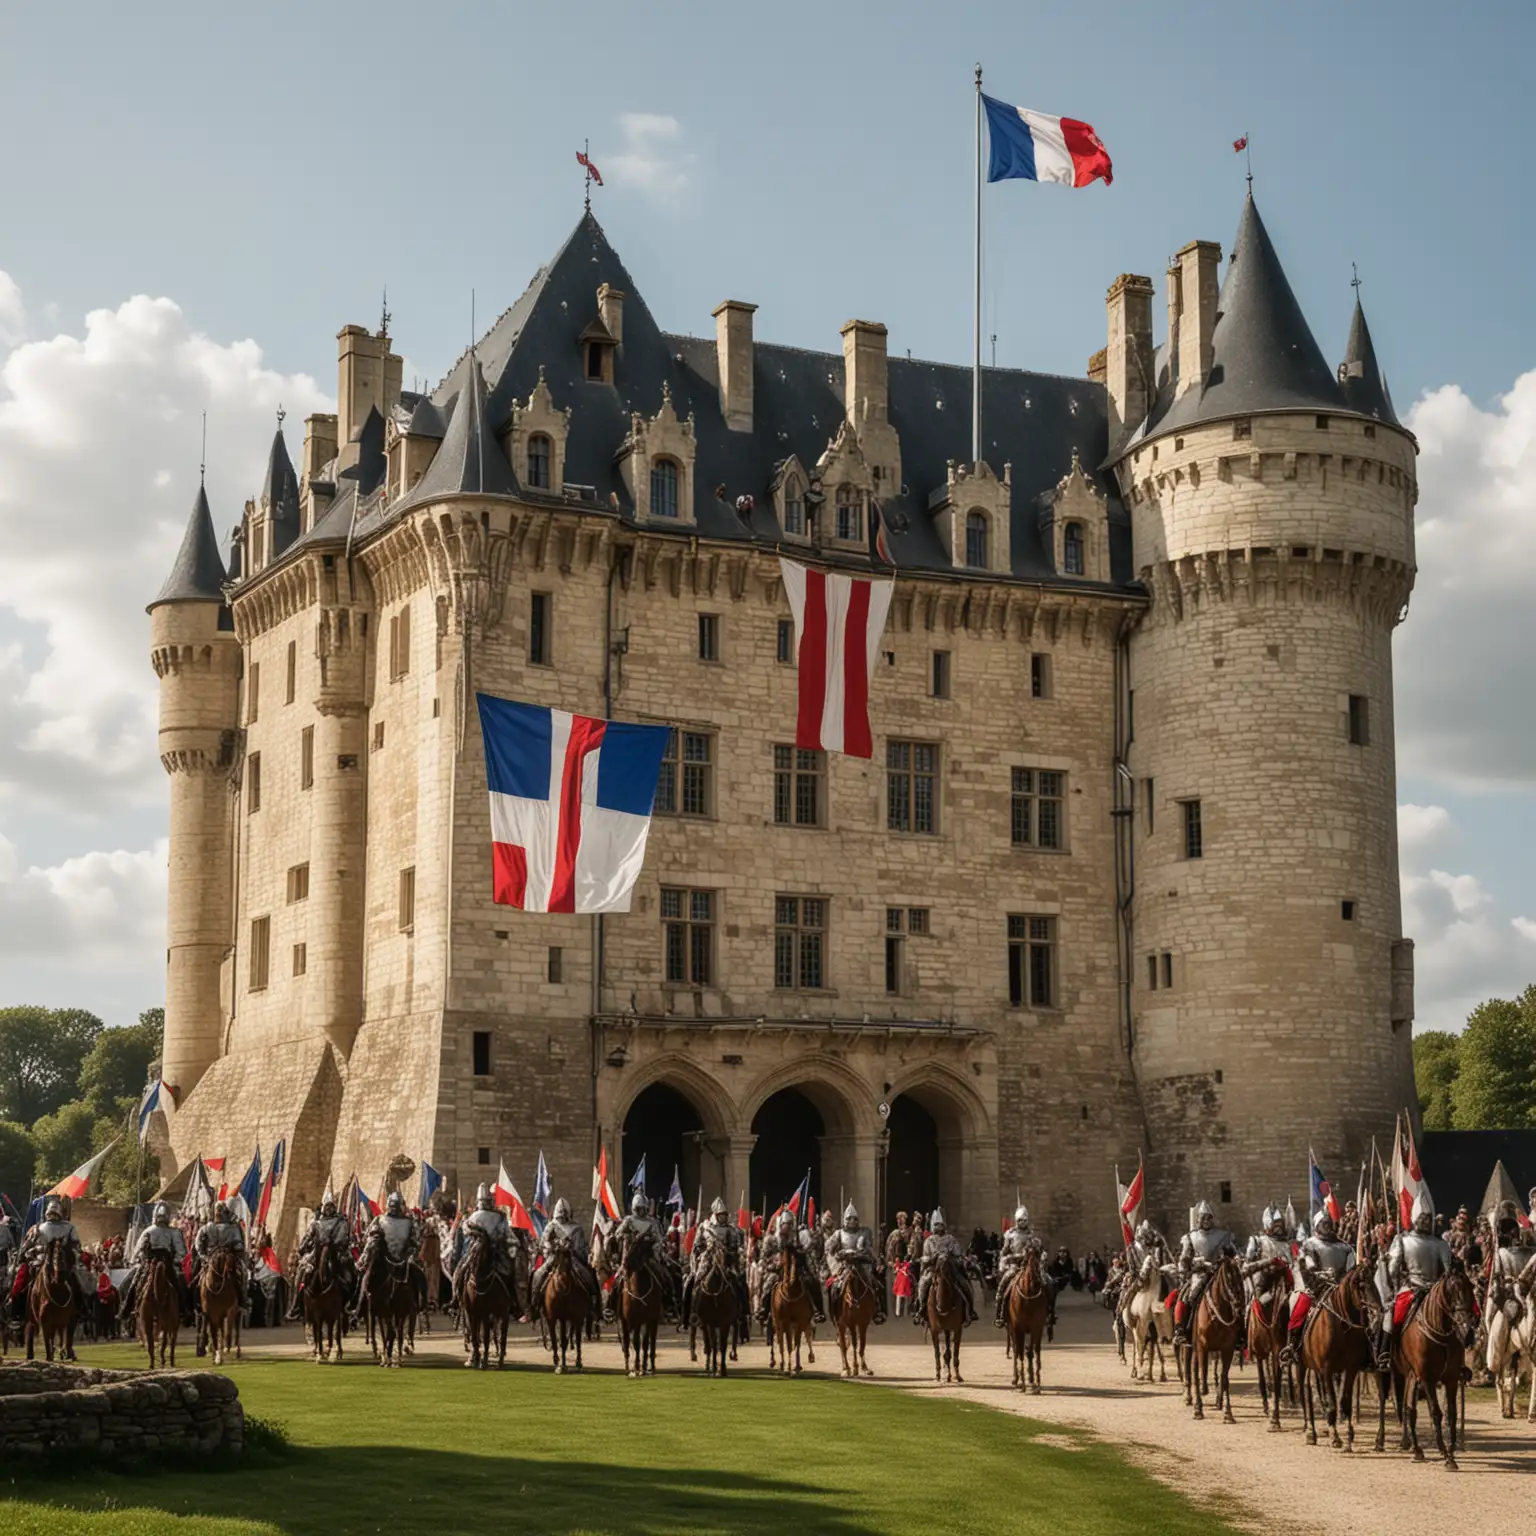 一座诺曼风格的城堡，城堡上飘扬着法国旗帜。城堡旁边是穿着中世纪服装的诺曼贵族和士兵，象征诺曼人对英国法律和城堡建设的贡献。